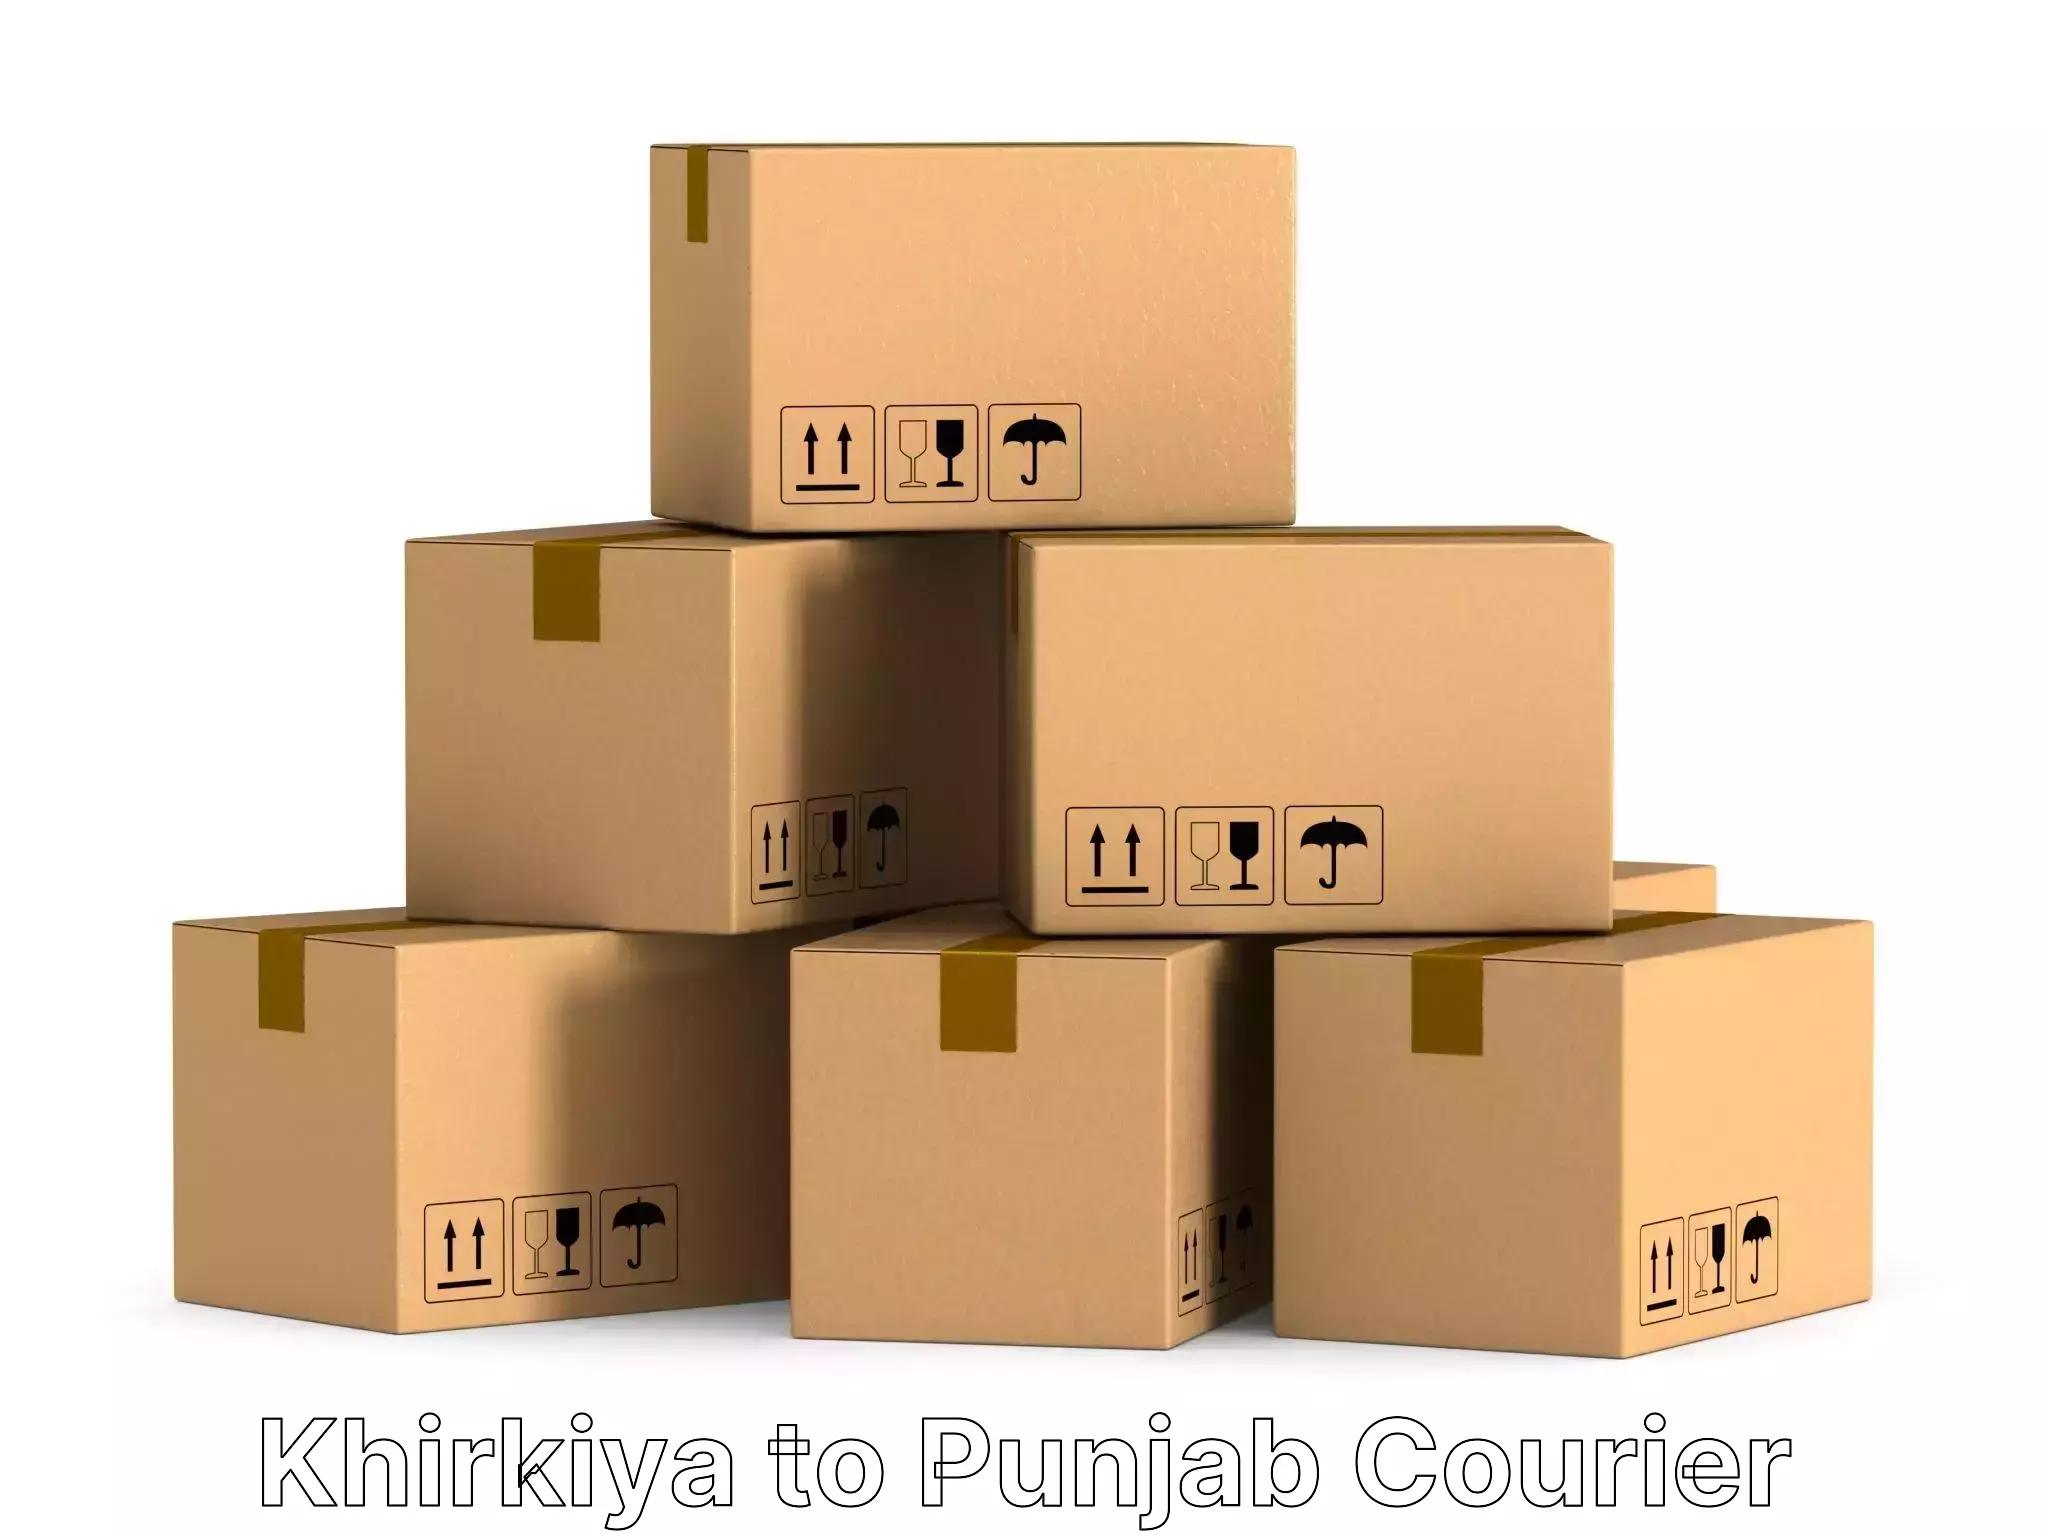 Seamless moving process Khirkiya to Punjab